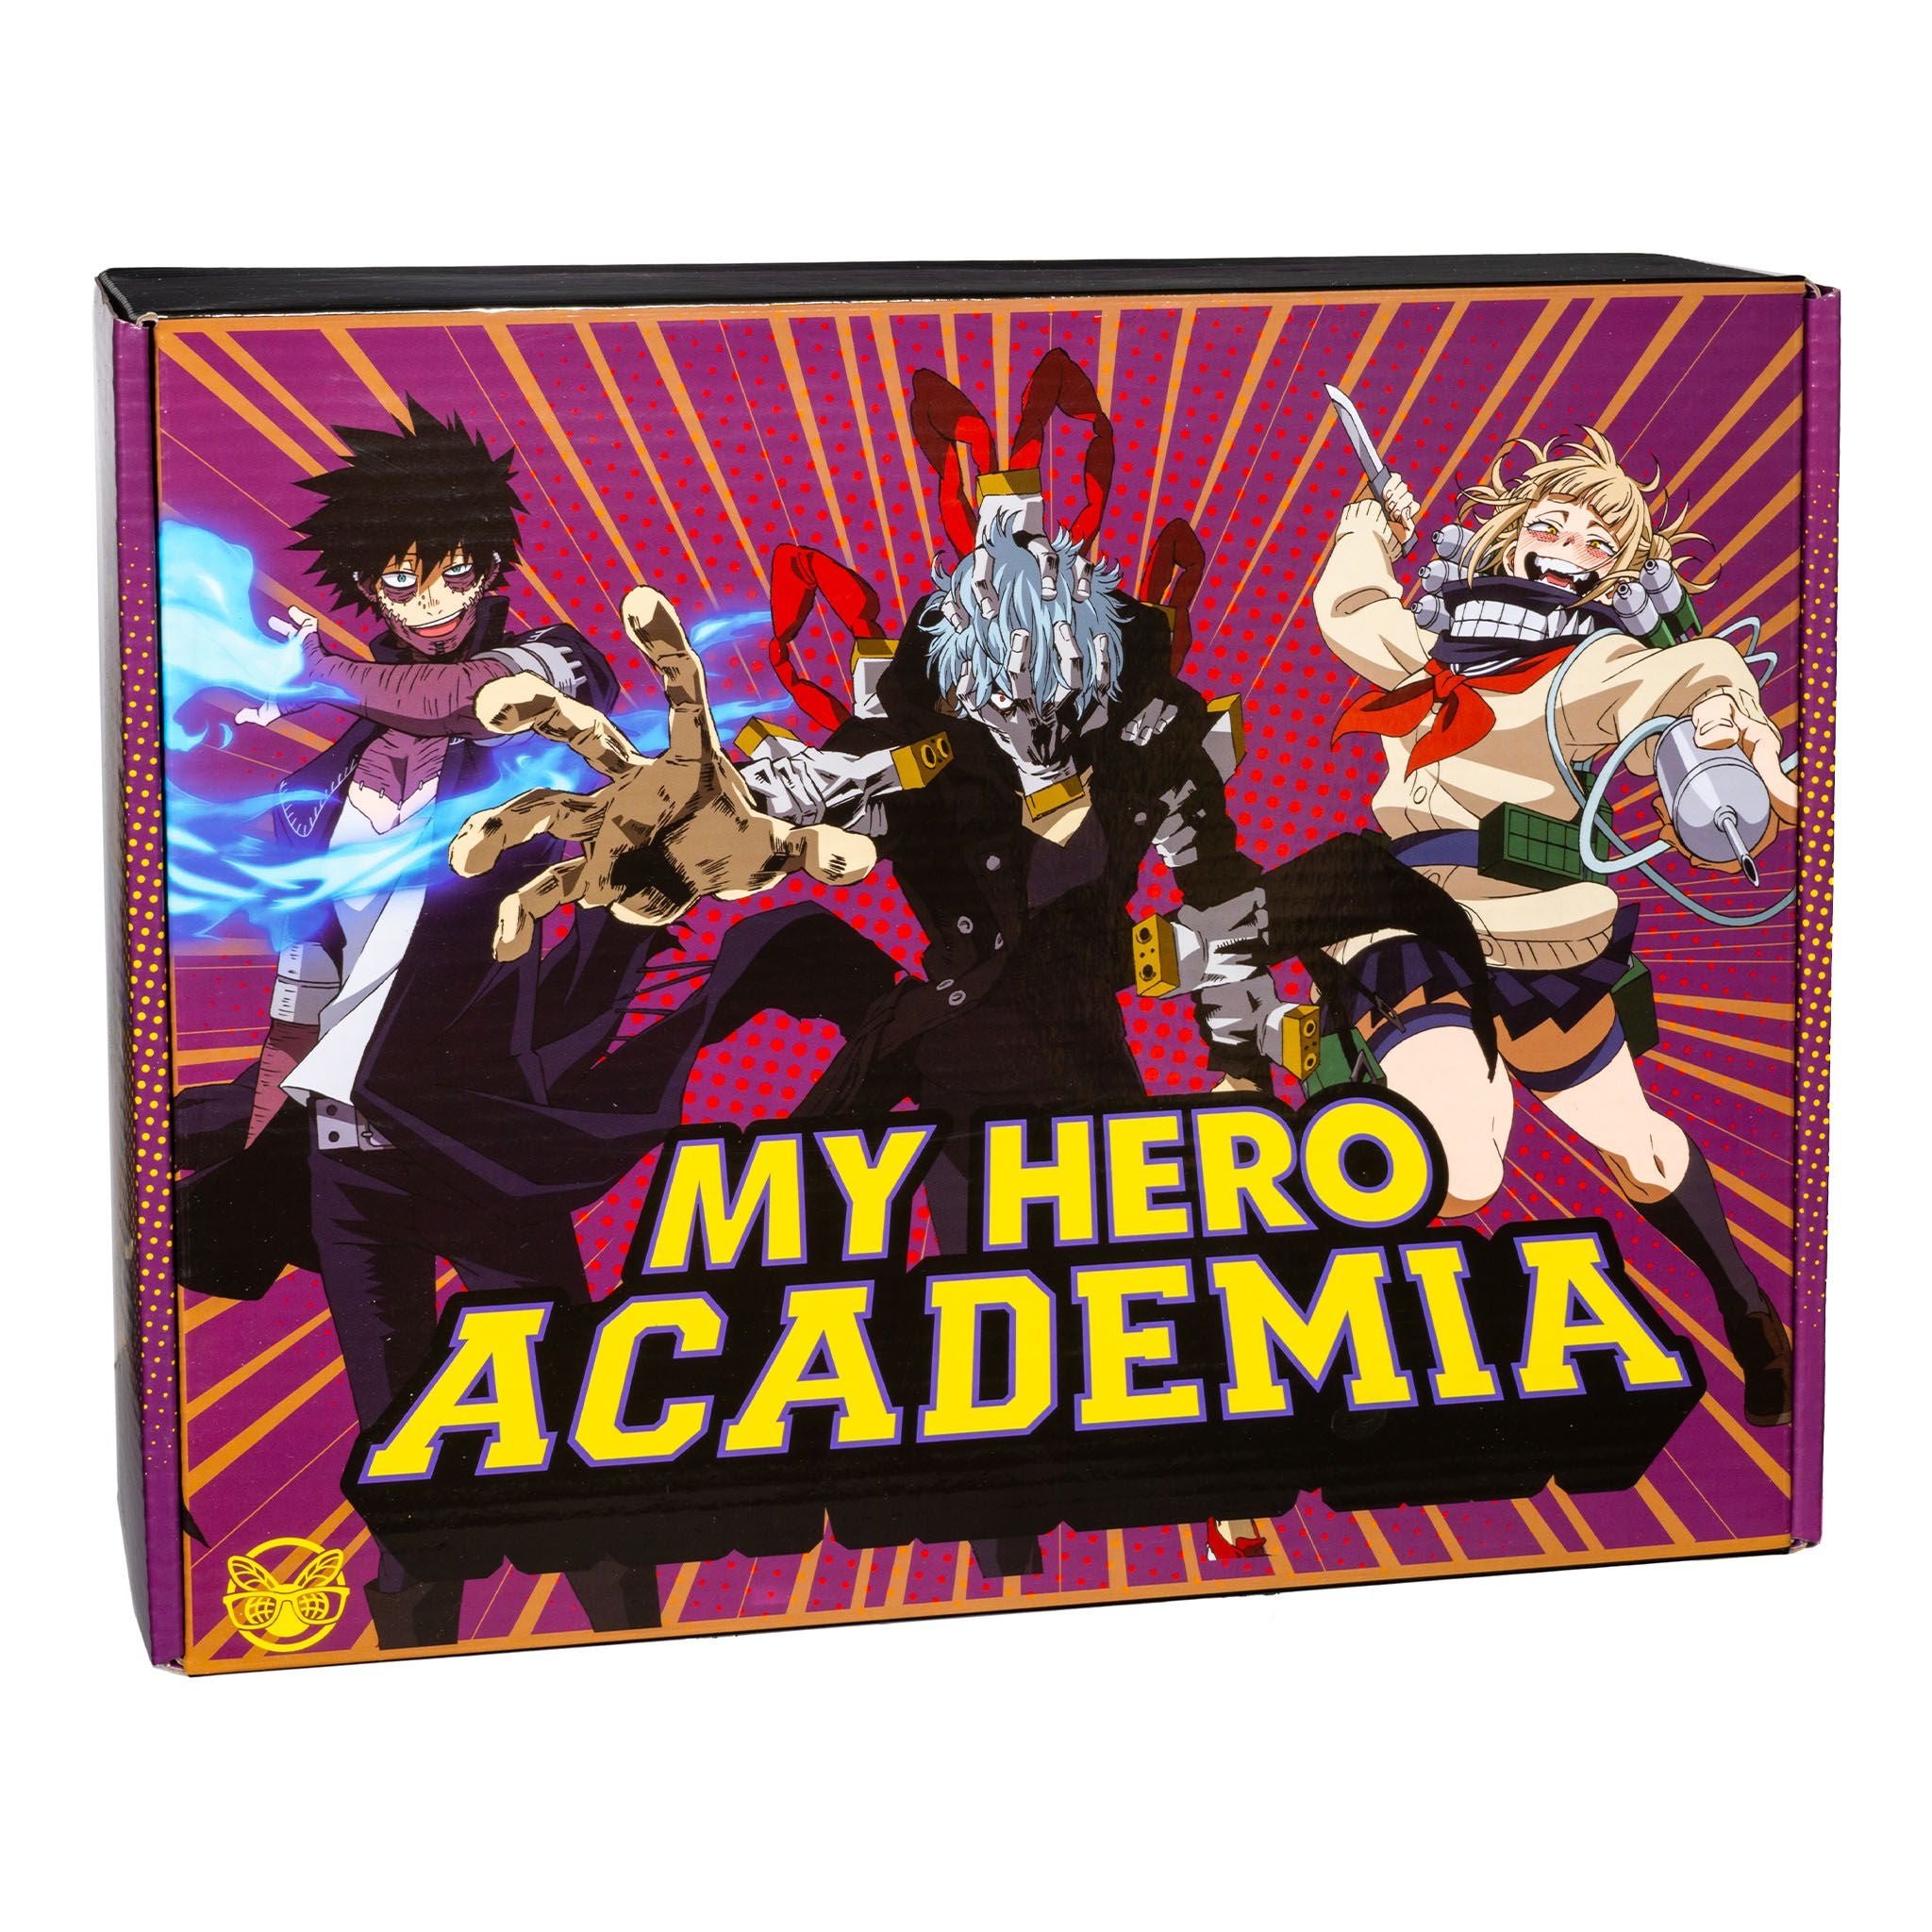 My Hero Academia Villain Army Mystery Box